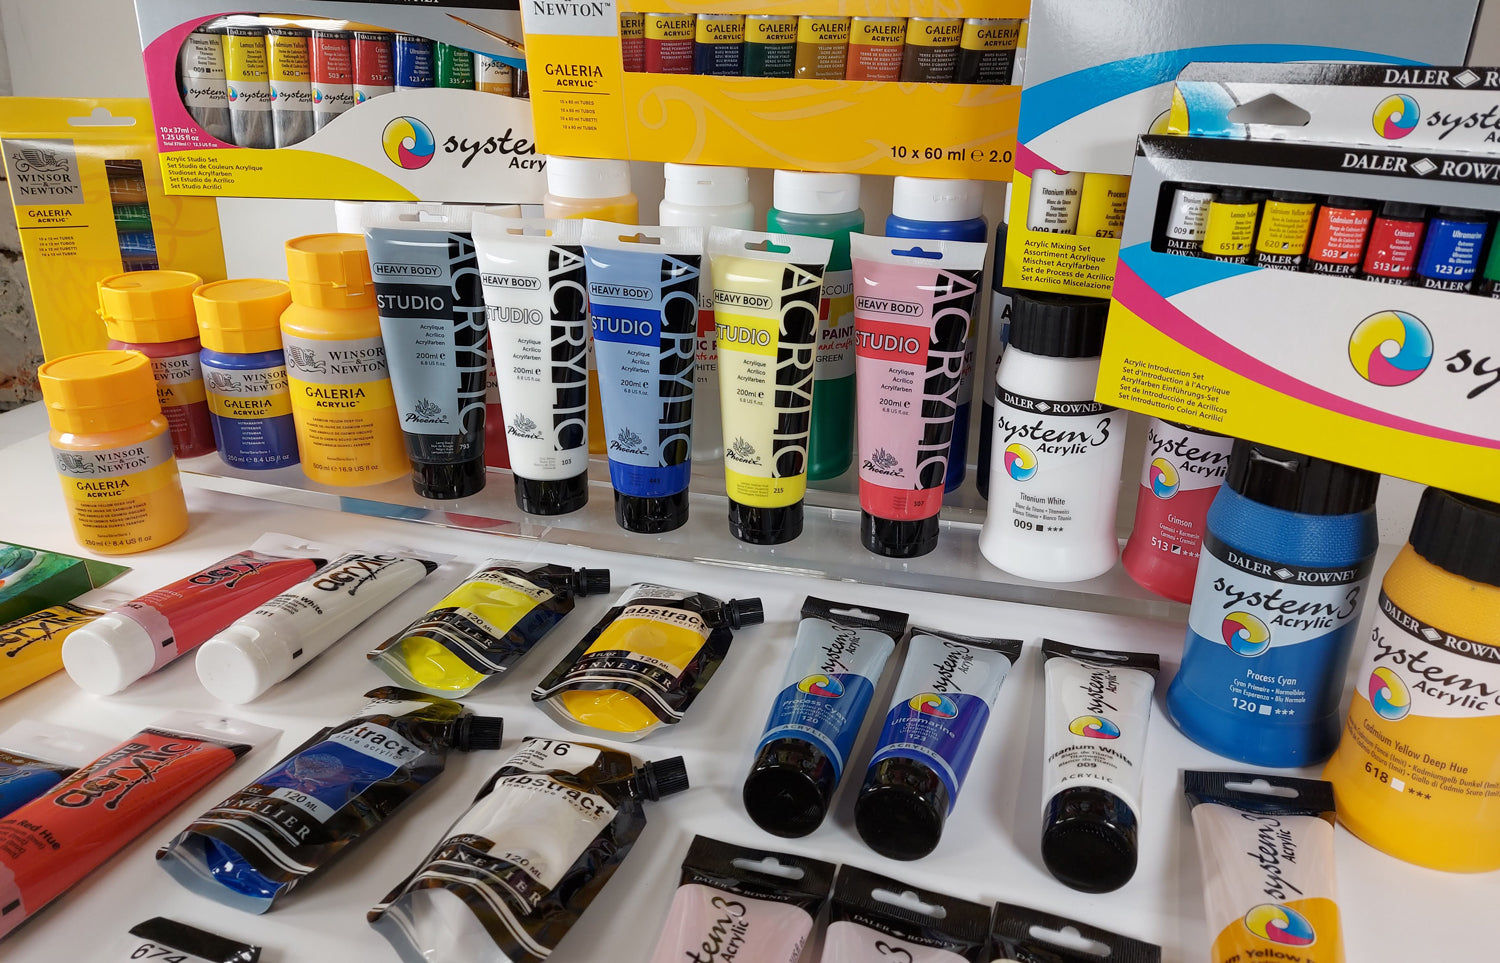 Artist Painting Set, 6 Acrylic Paint Colors, Wood Palette, 3